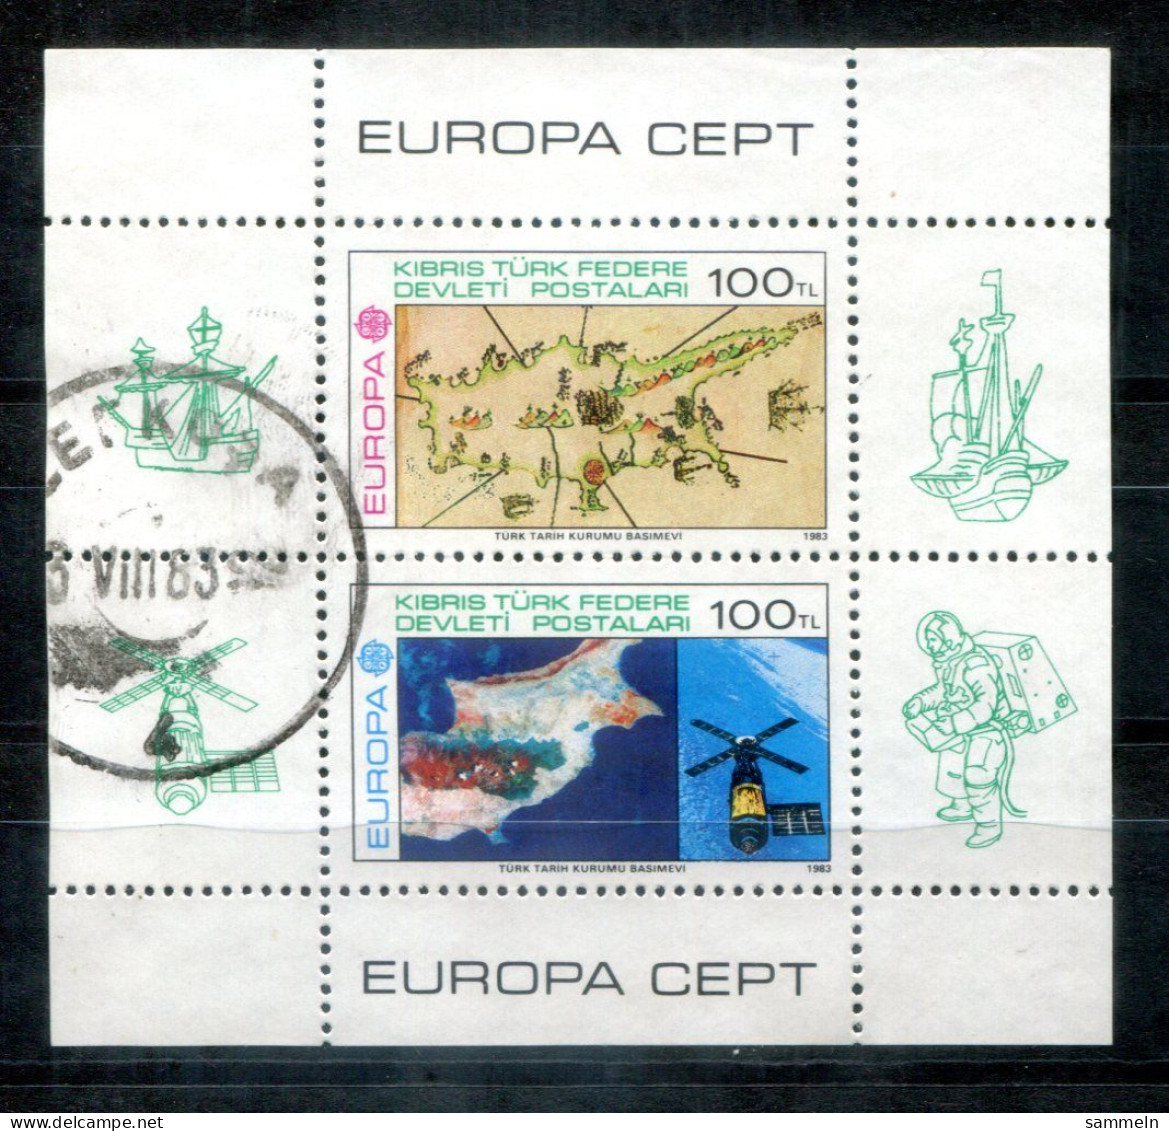 TÜRKISCH-ZYPERN Block 4, Bl.4 Canc. - Europa CEPT 19853, Weltraum. Space, Espace - TURKISH CYPRUS / CHYPRE TURQUE - Usados